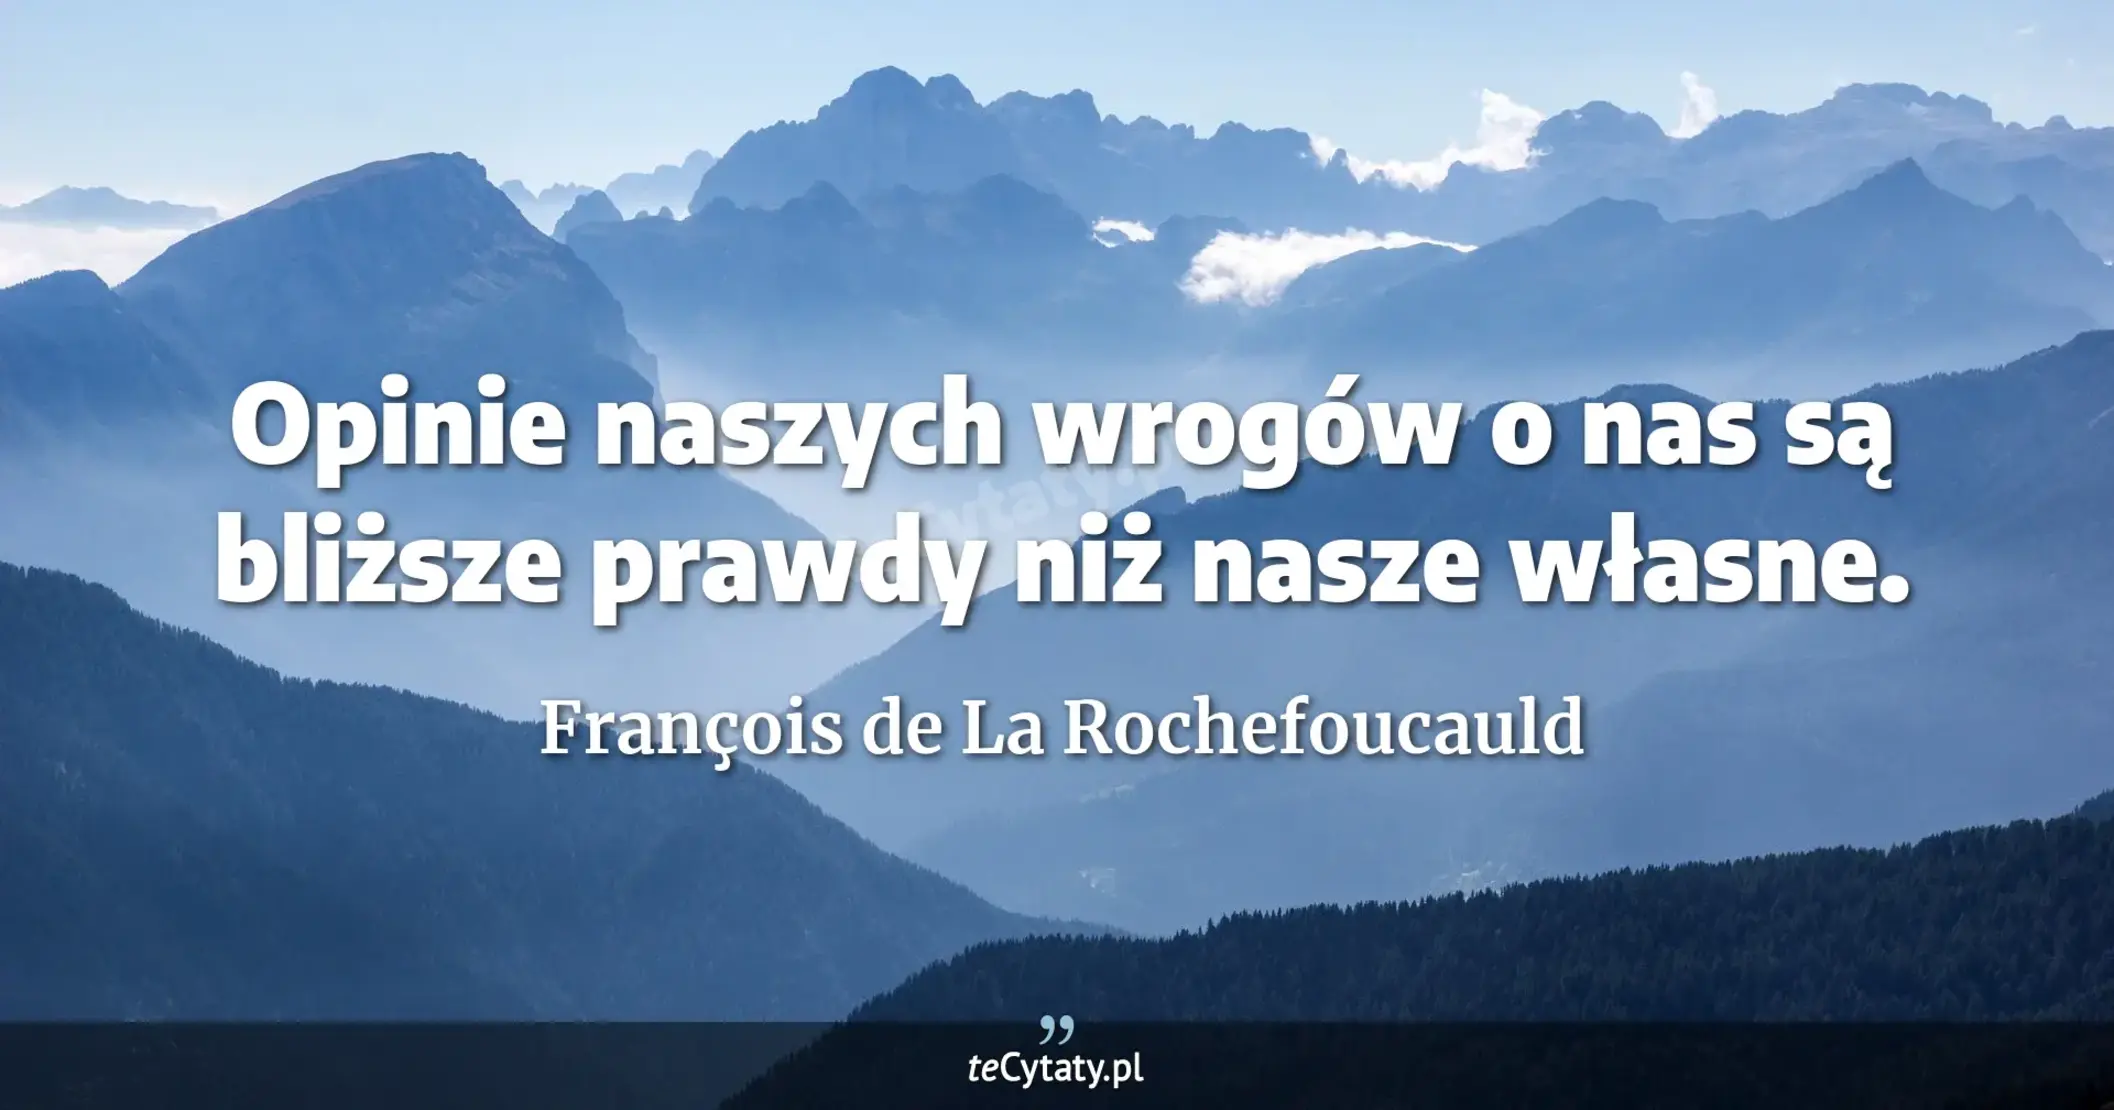 Opinie naszych wrogów o nas są bliższe prawdy niż nasze własne. - François de La Rochefoucauld